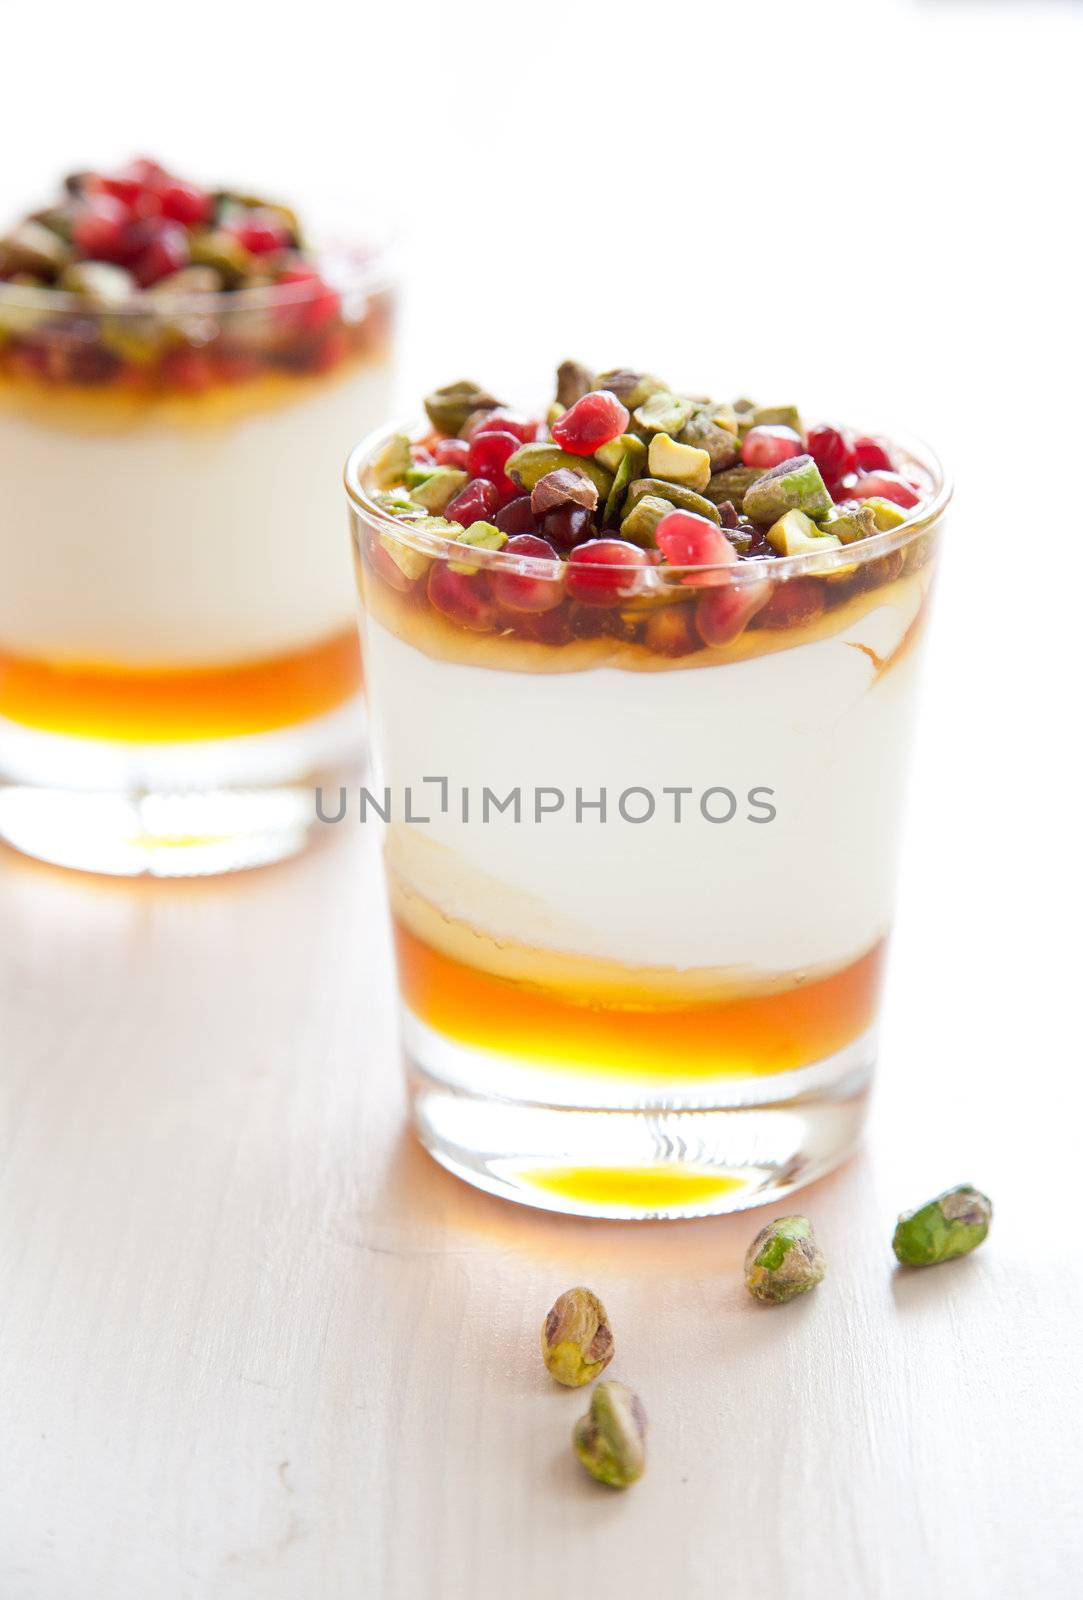 Pistachio dessert by Fotosmurf